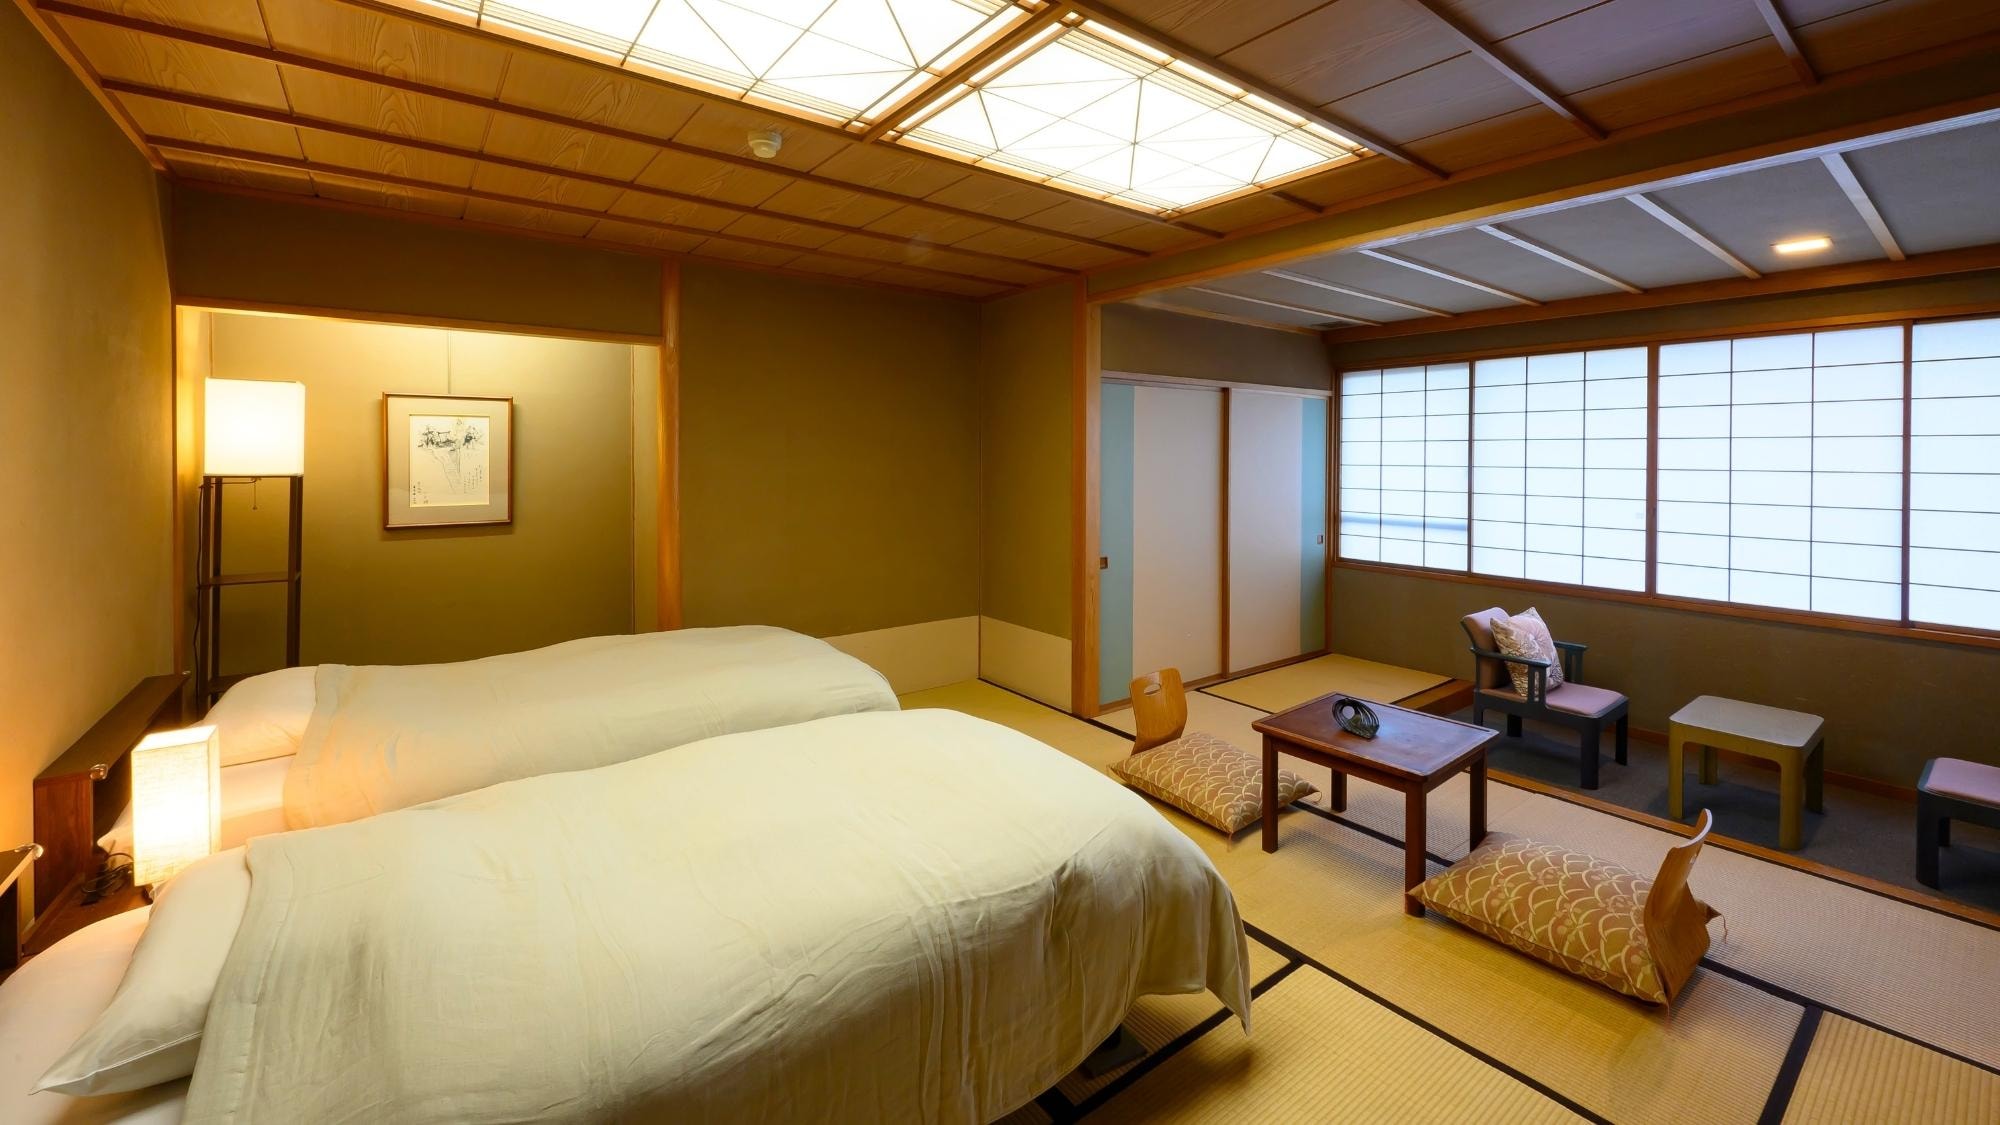 대욕장 직결! 인기의 키타노마루에 일본식 침대 객실 탄생!